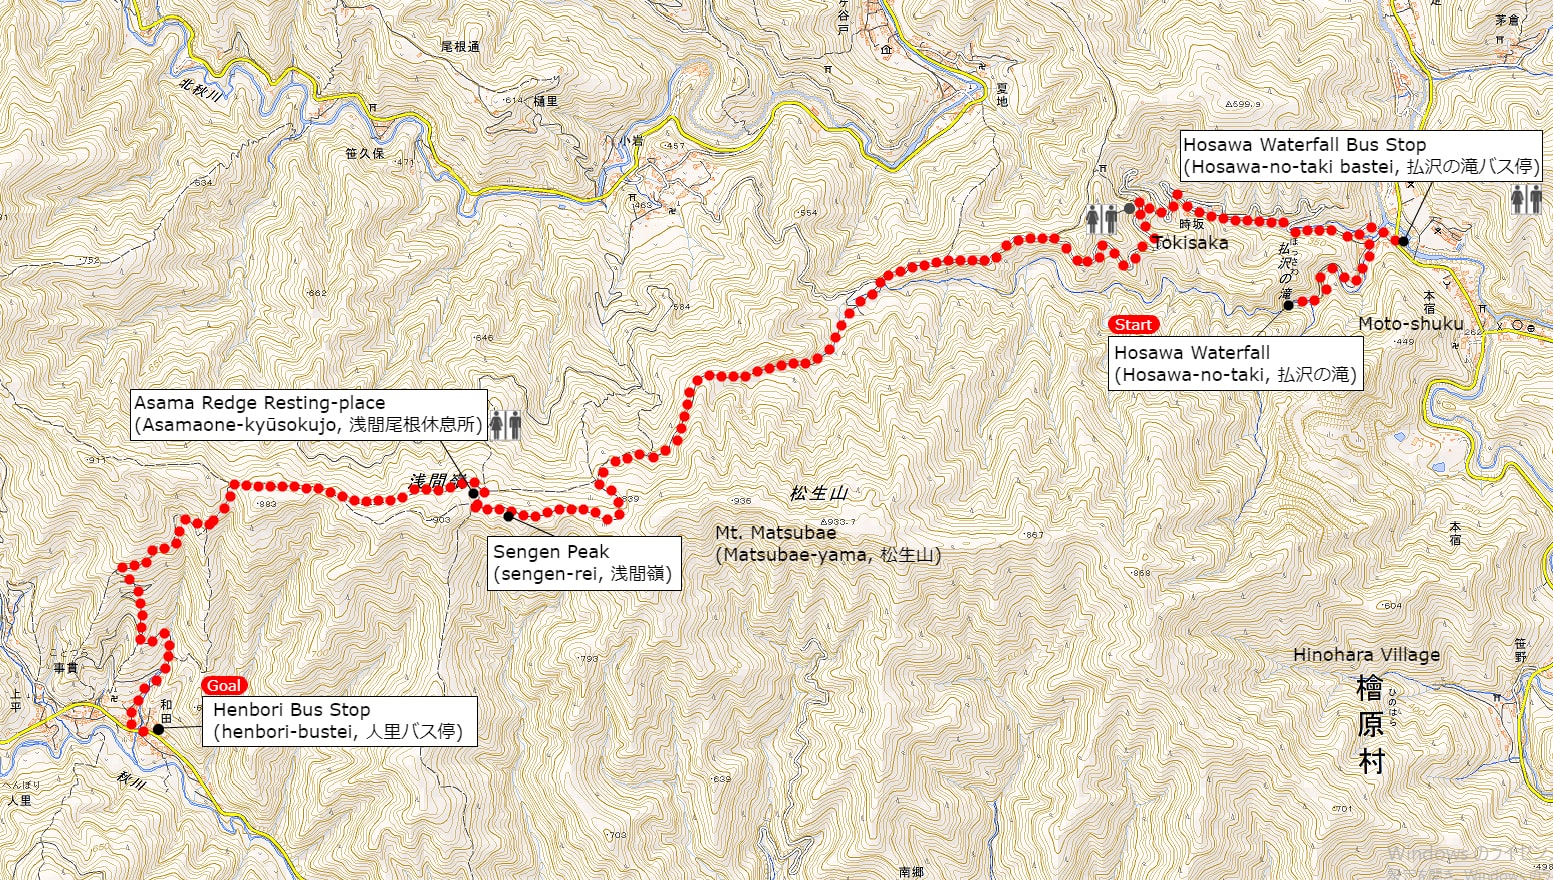 浅間尾根ハイキングコースの地図 | クリックすると別タブが開いて拡大図がご覧になれます。